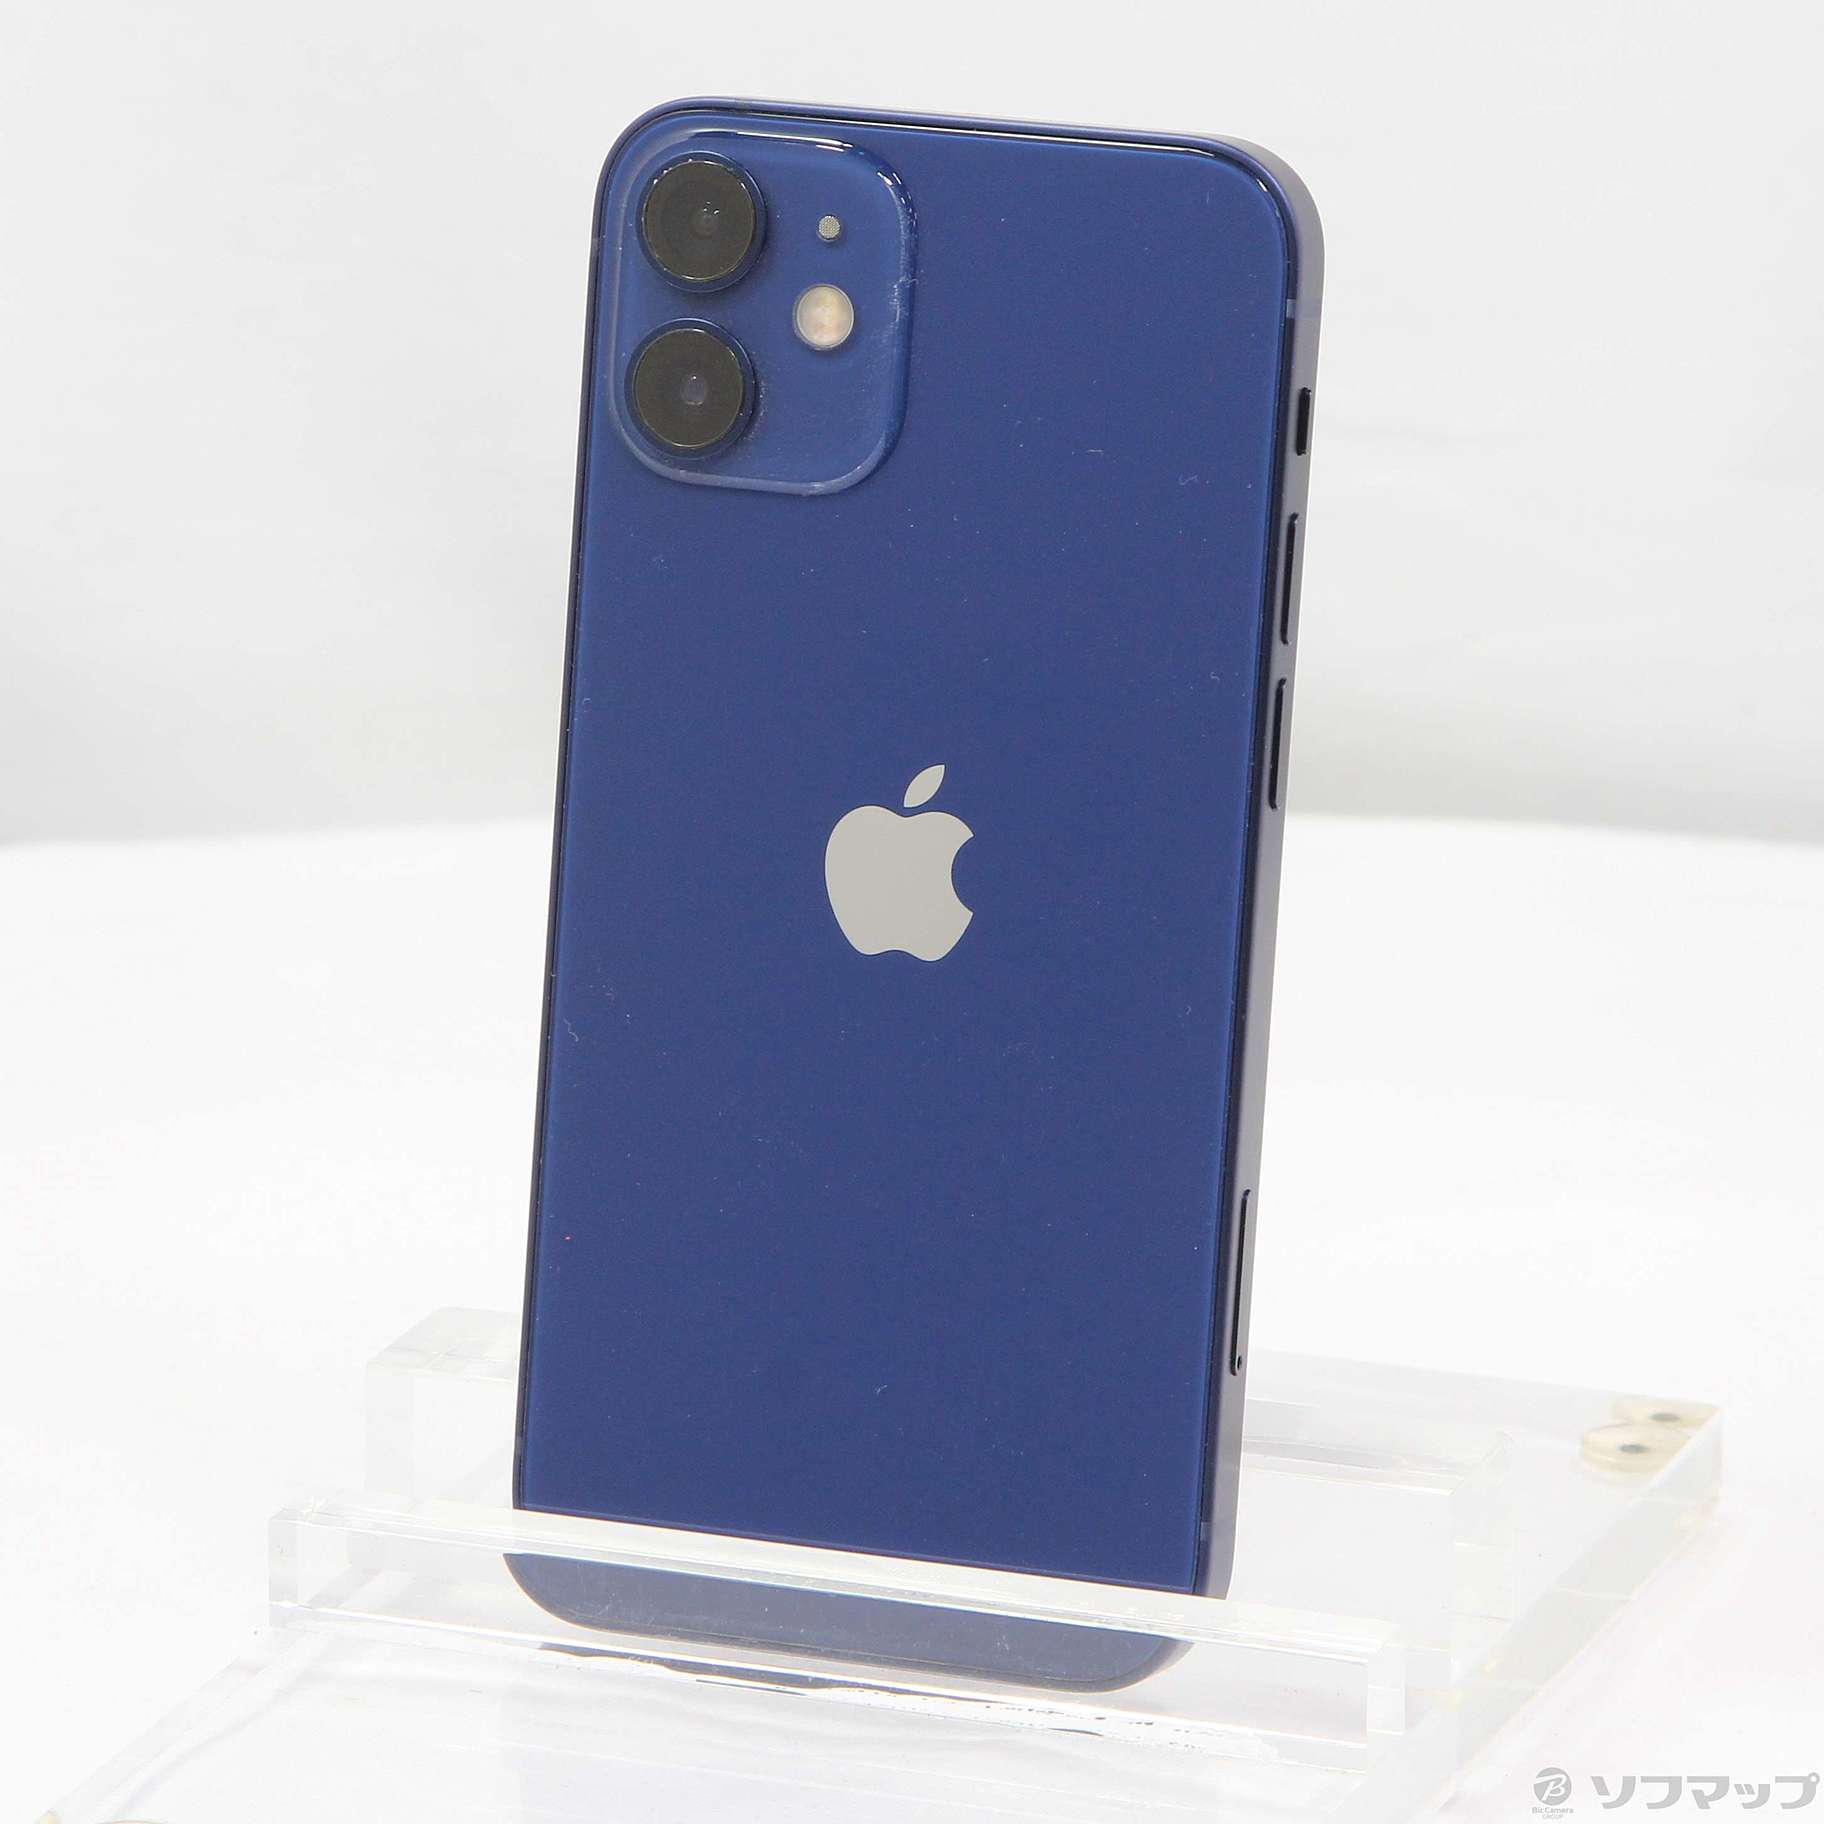 スマホ・タブレット・パソコンiPhone 12 mini 64GB ブルー SIMフリー